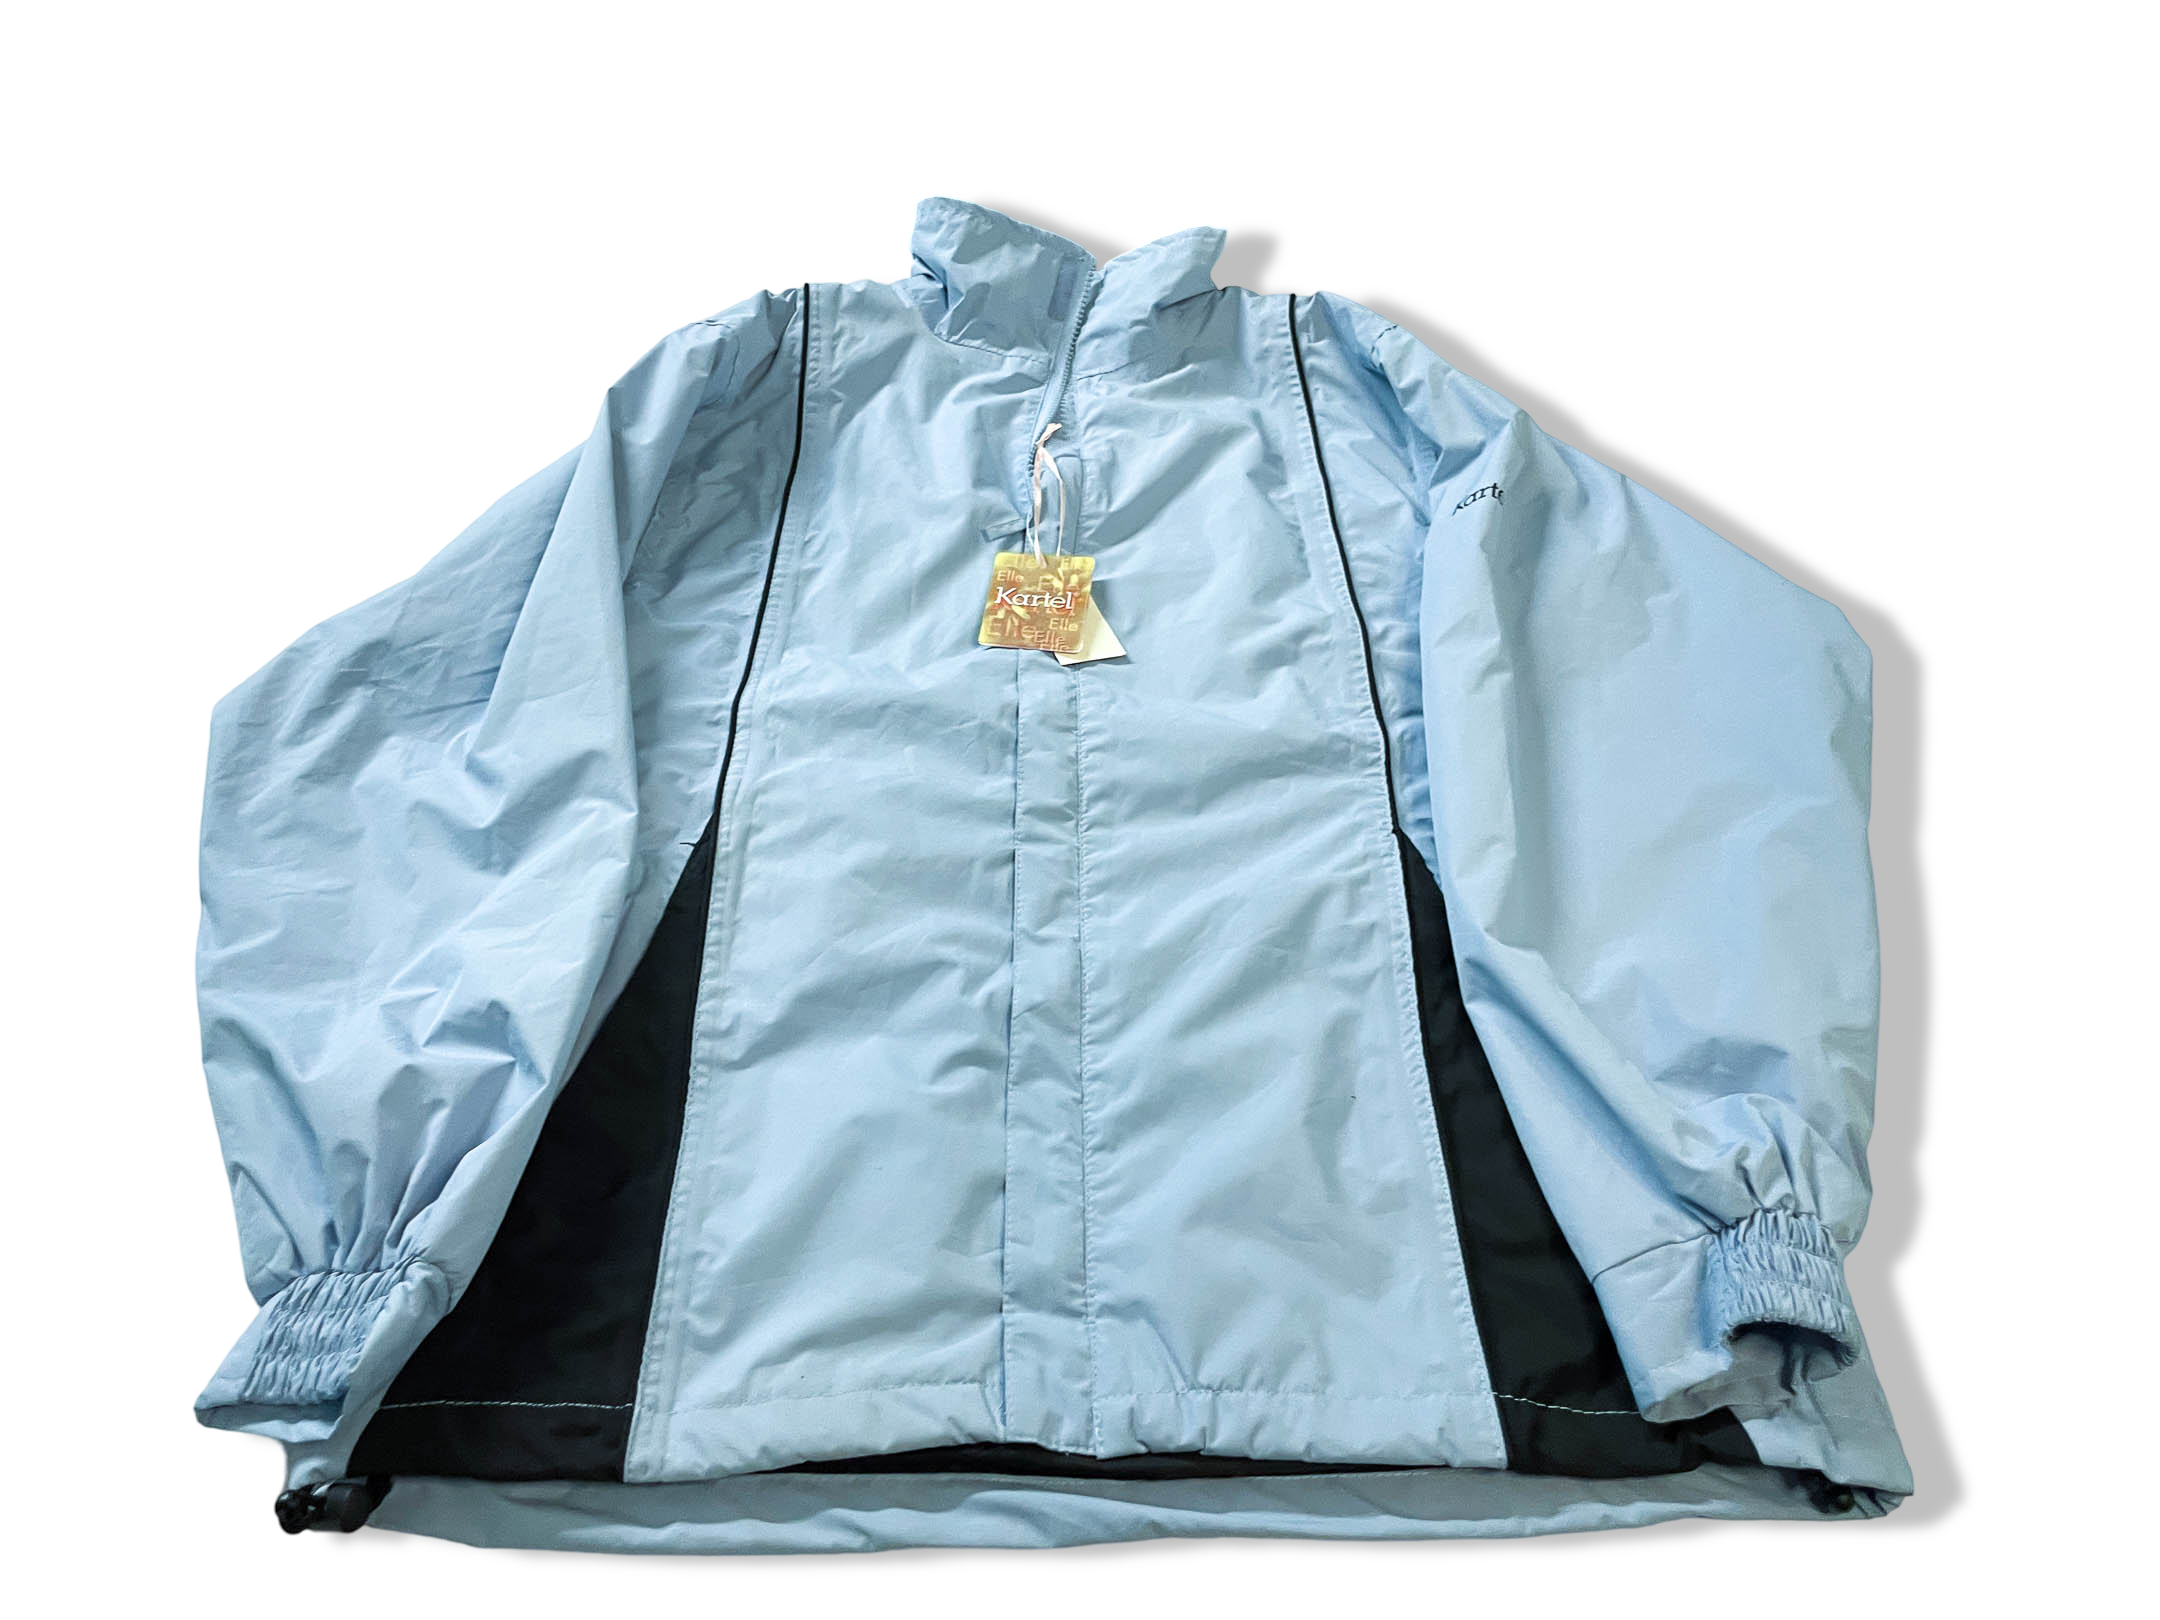 Vintage women's Kartel Elle blue windbreaker full zip jacket in S|L 30 W 20|SKU 4008 with new tag